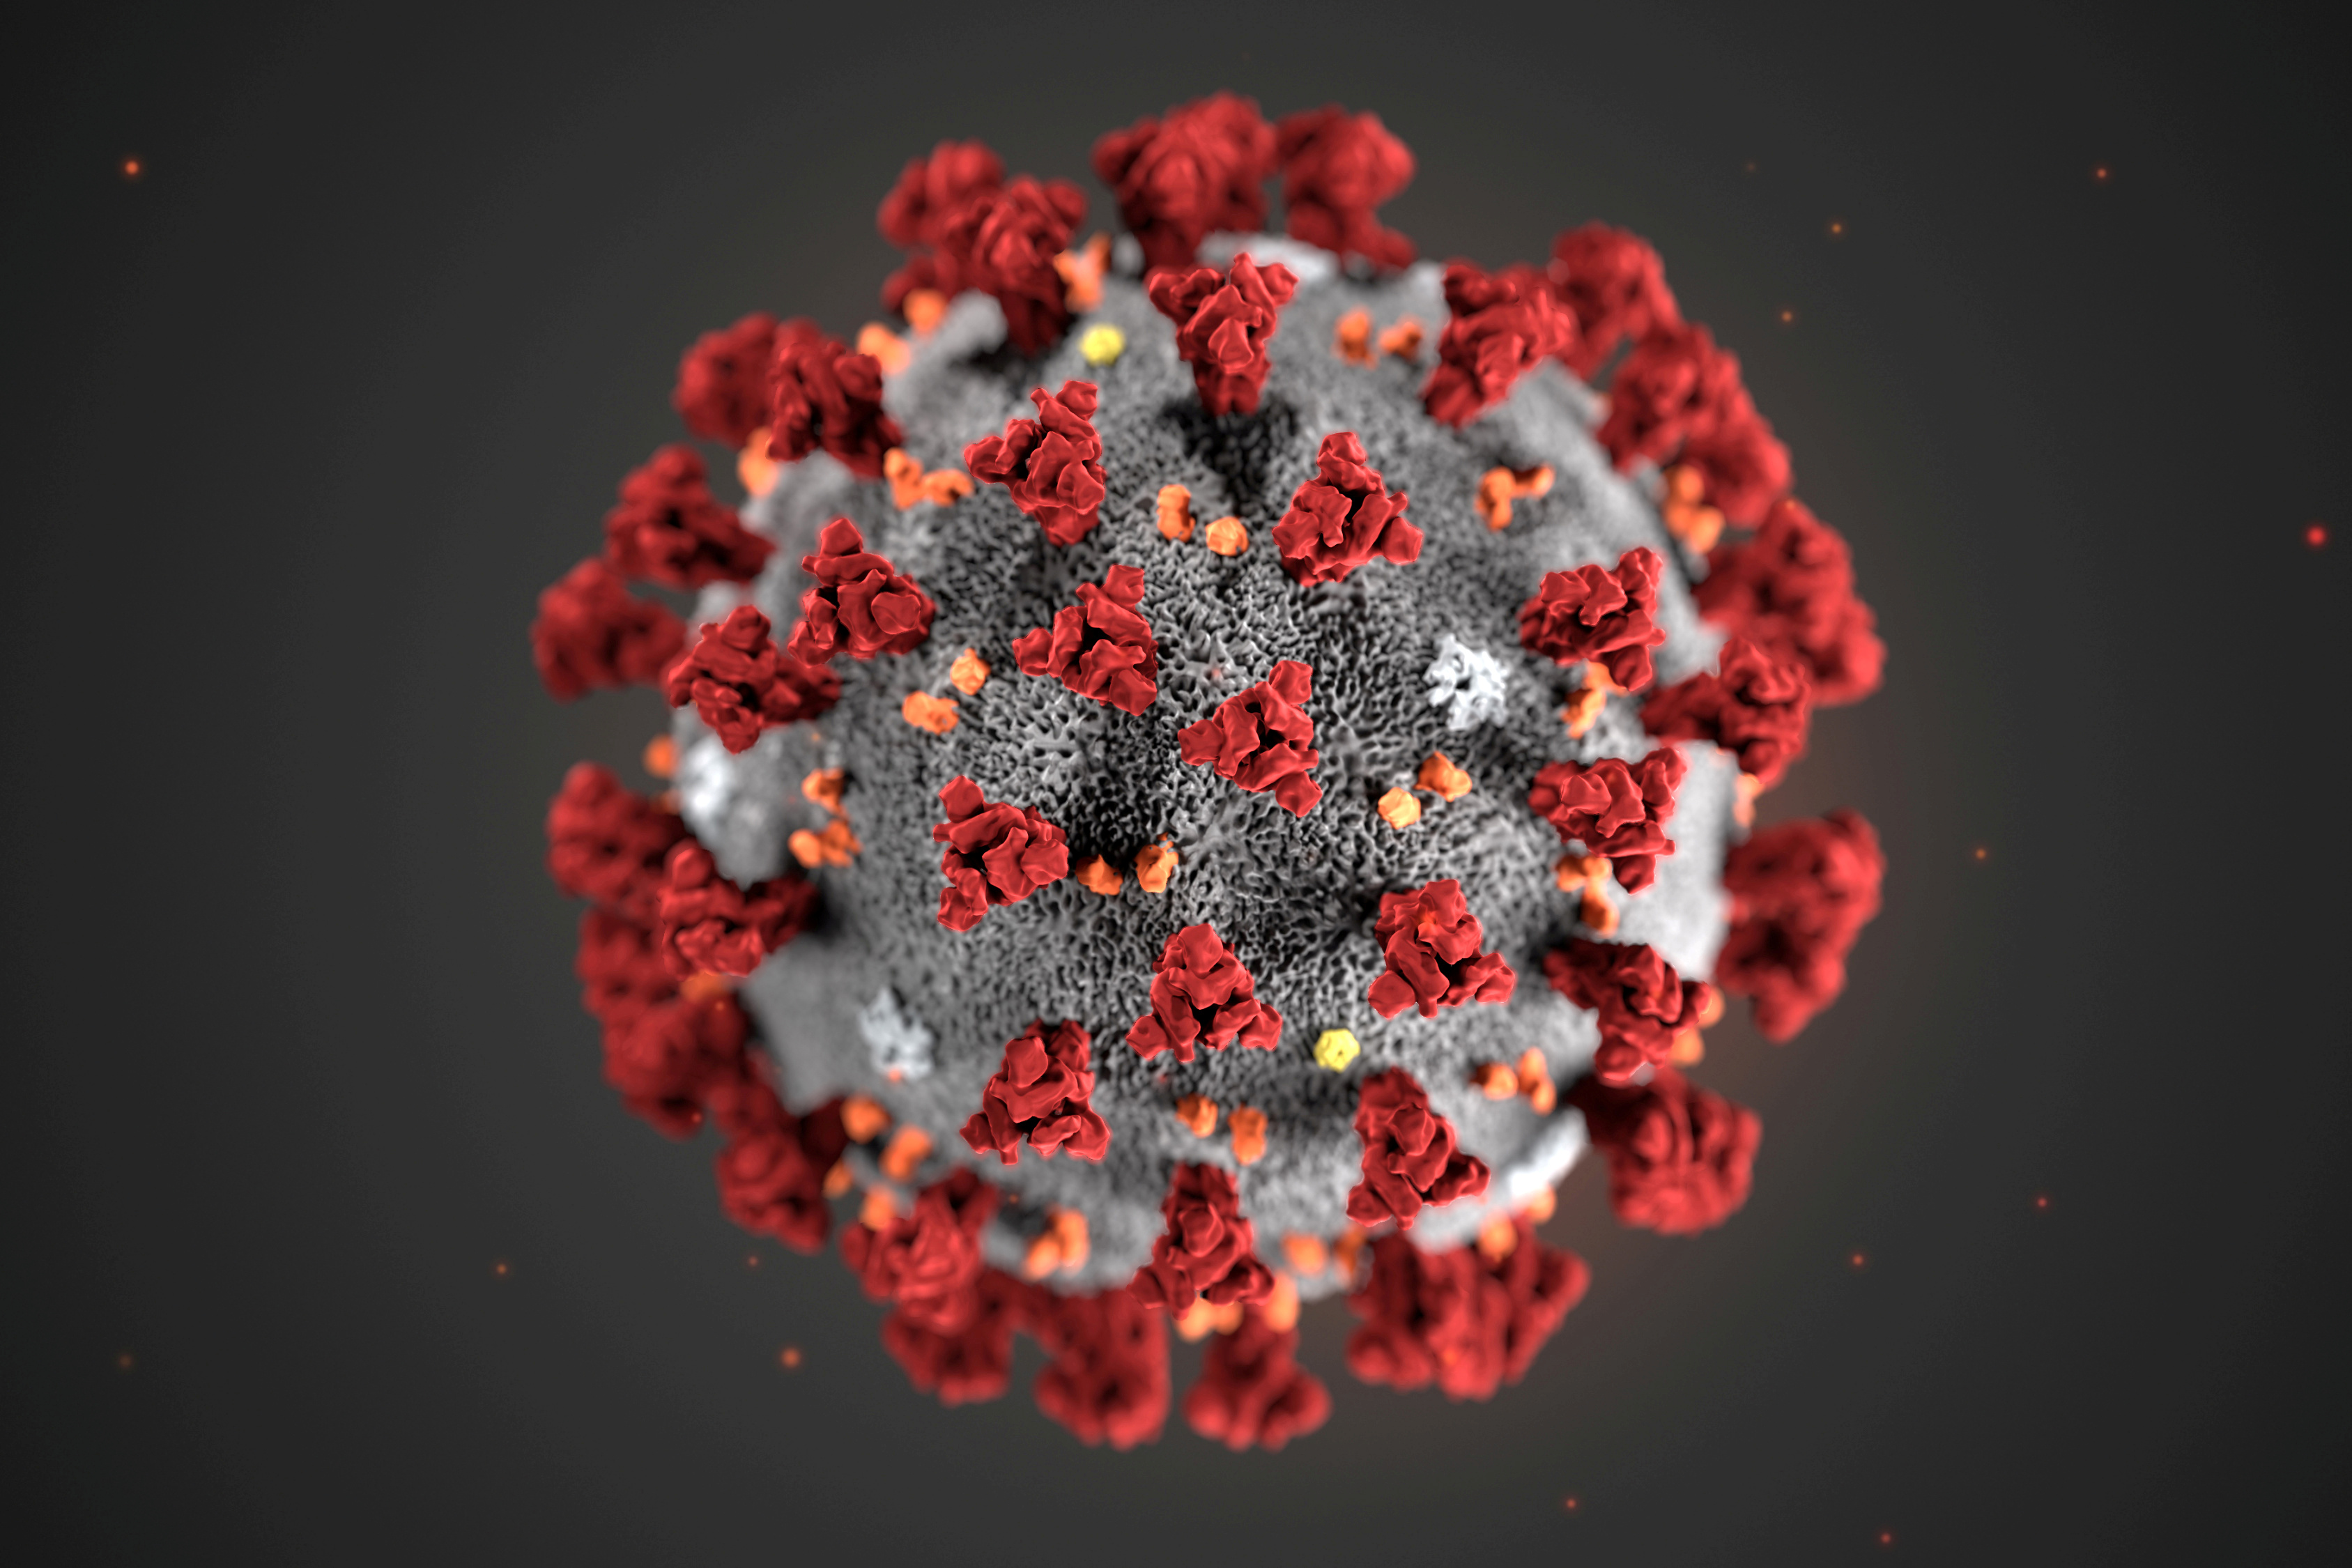 Un an de crise : ce que la science a appris sur ce coronavirus imprévisible